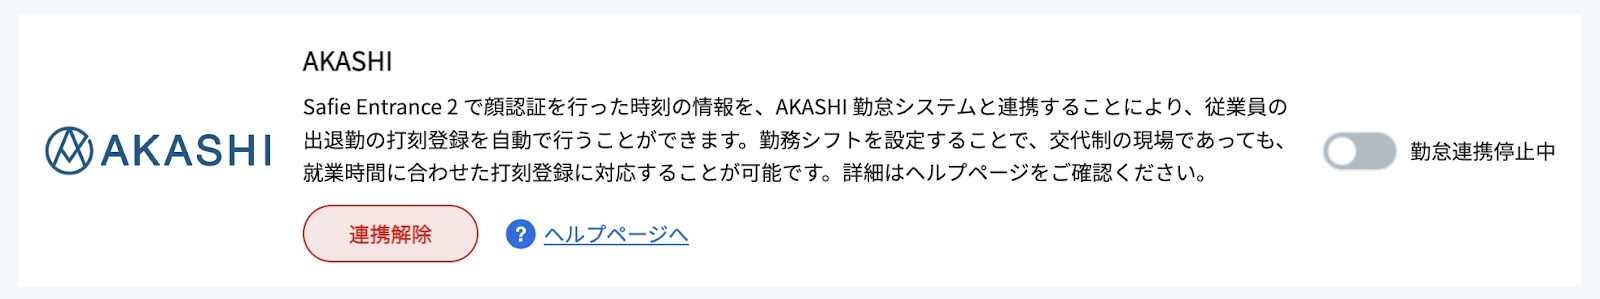 AKASHI-1.jpg